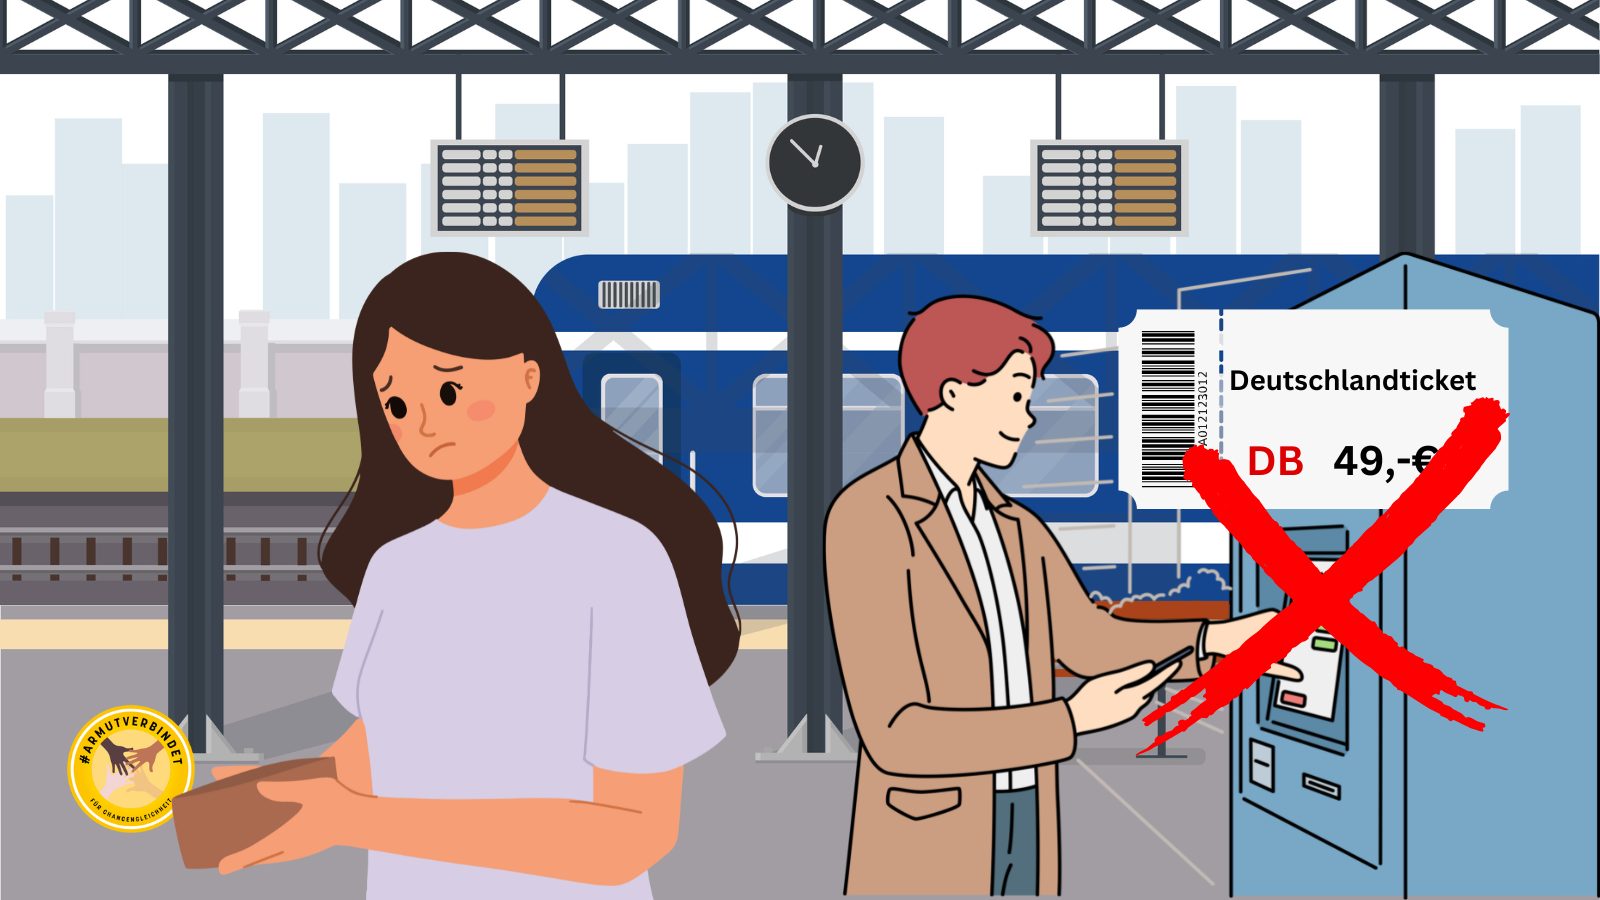 Bahnhof. Im Hintergrund ein Zug. Vorne ein Ticketautomat, wo jemand versucht das 49 Euro Ticket zu kaufen. Ein rotes X zeigt an, dass das nicht möglich ist.